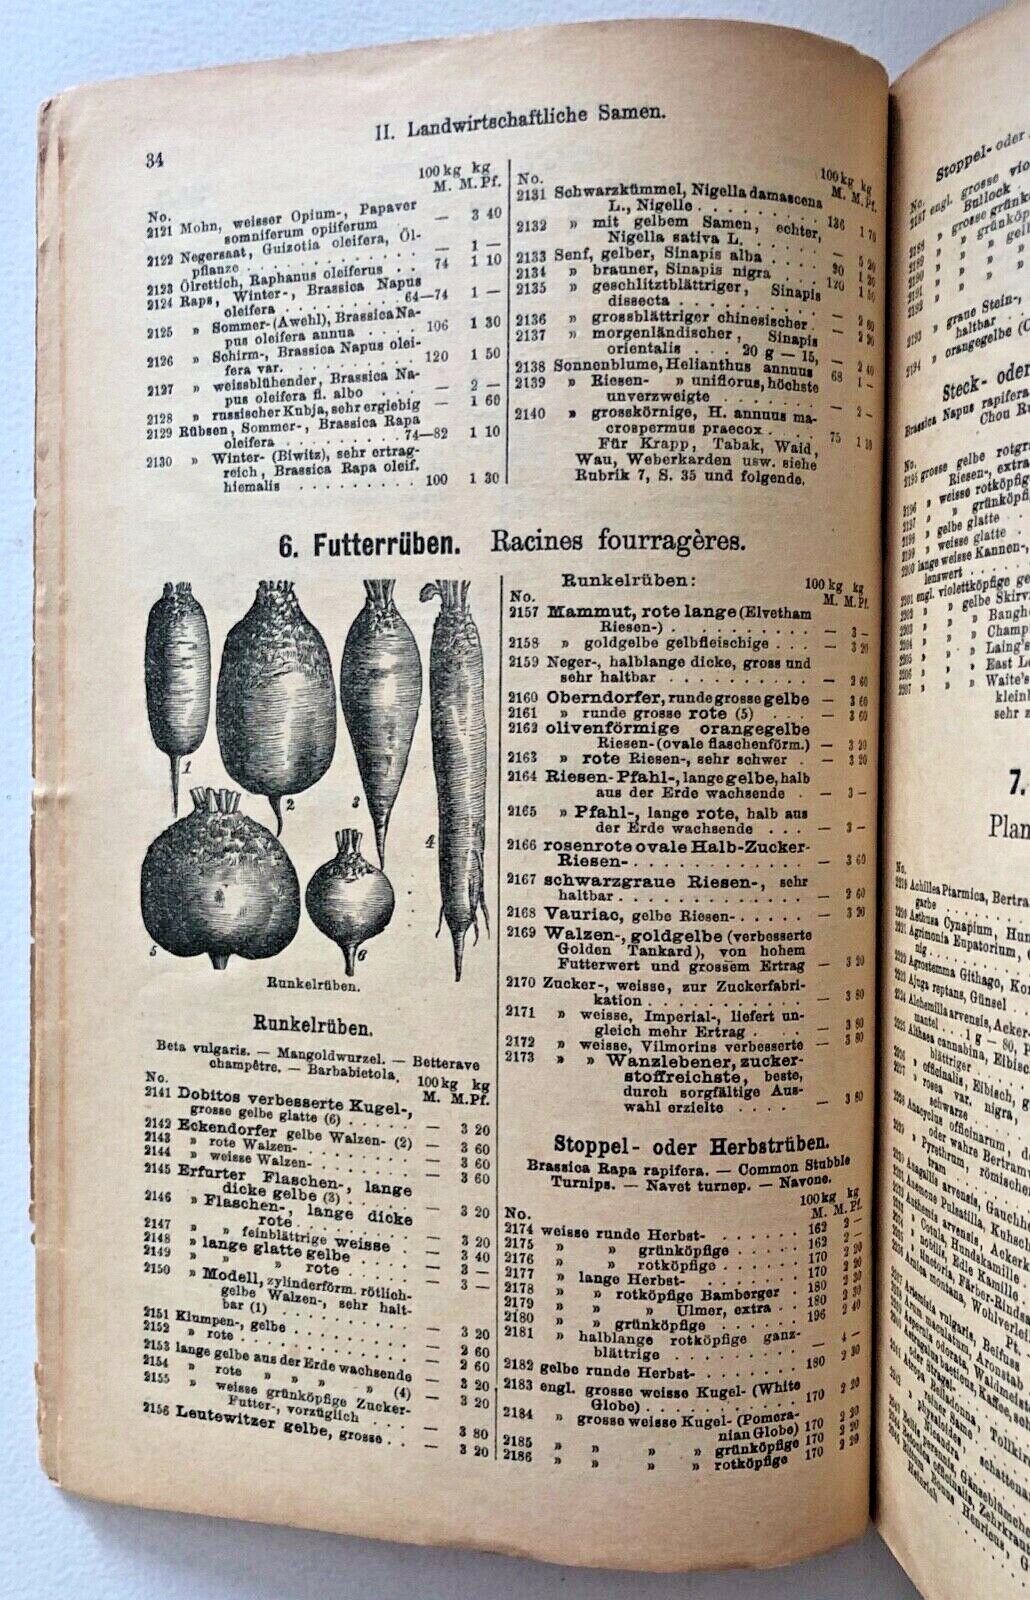 Haage & Schmidt 1912 Catalogue De Graines Et Plantes